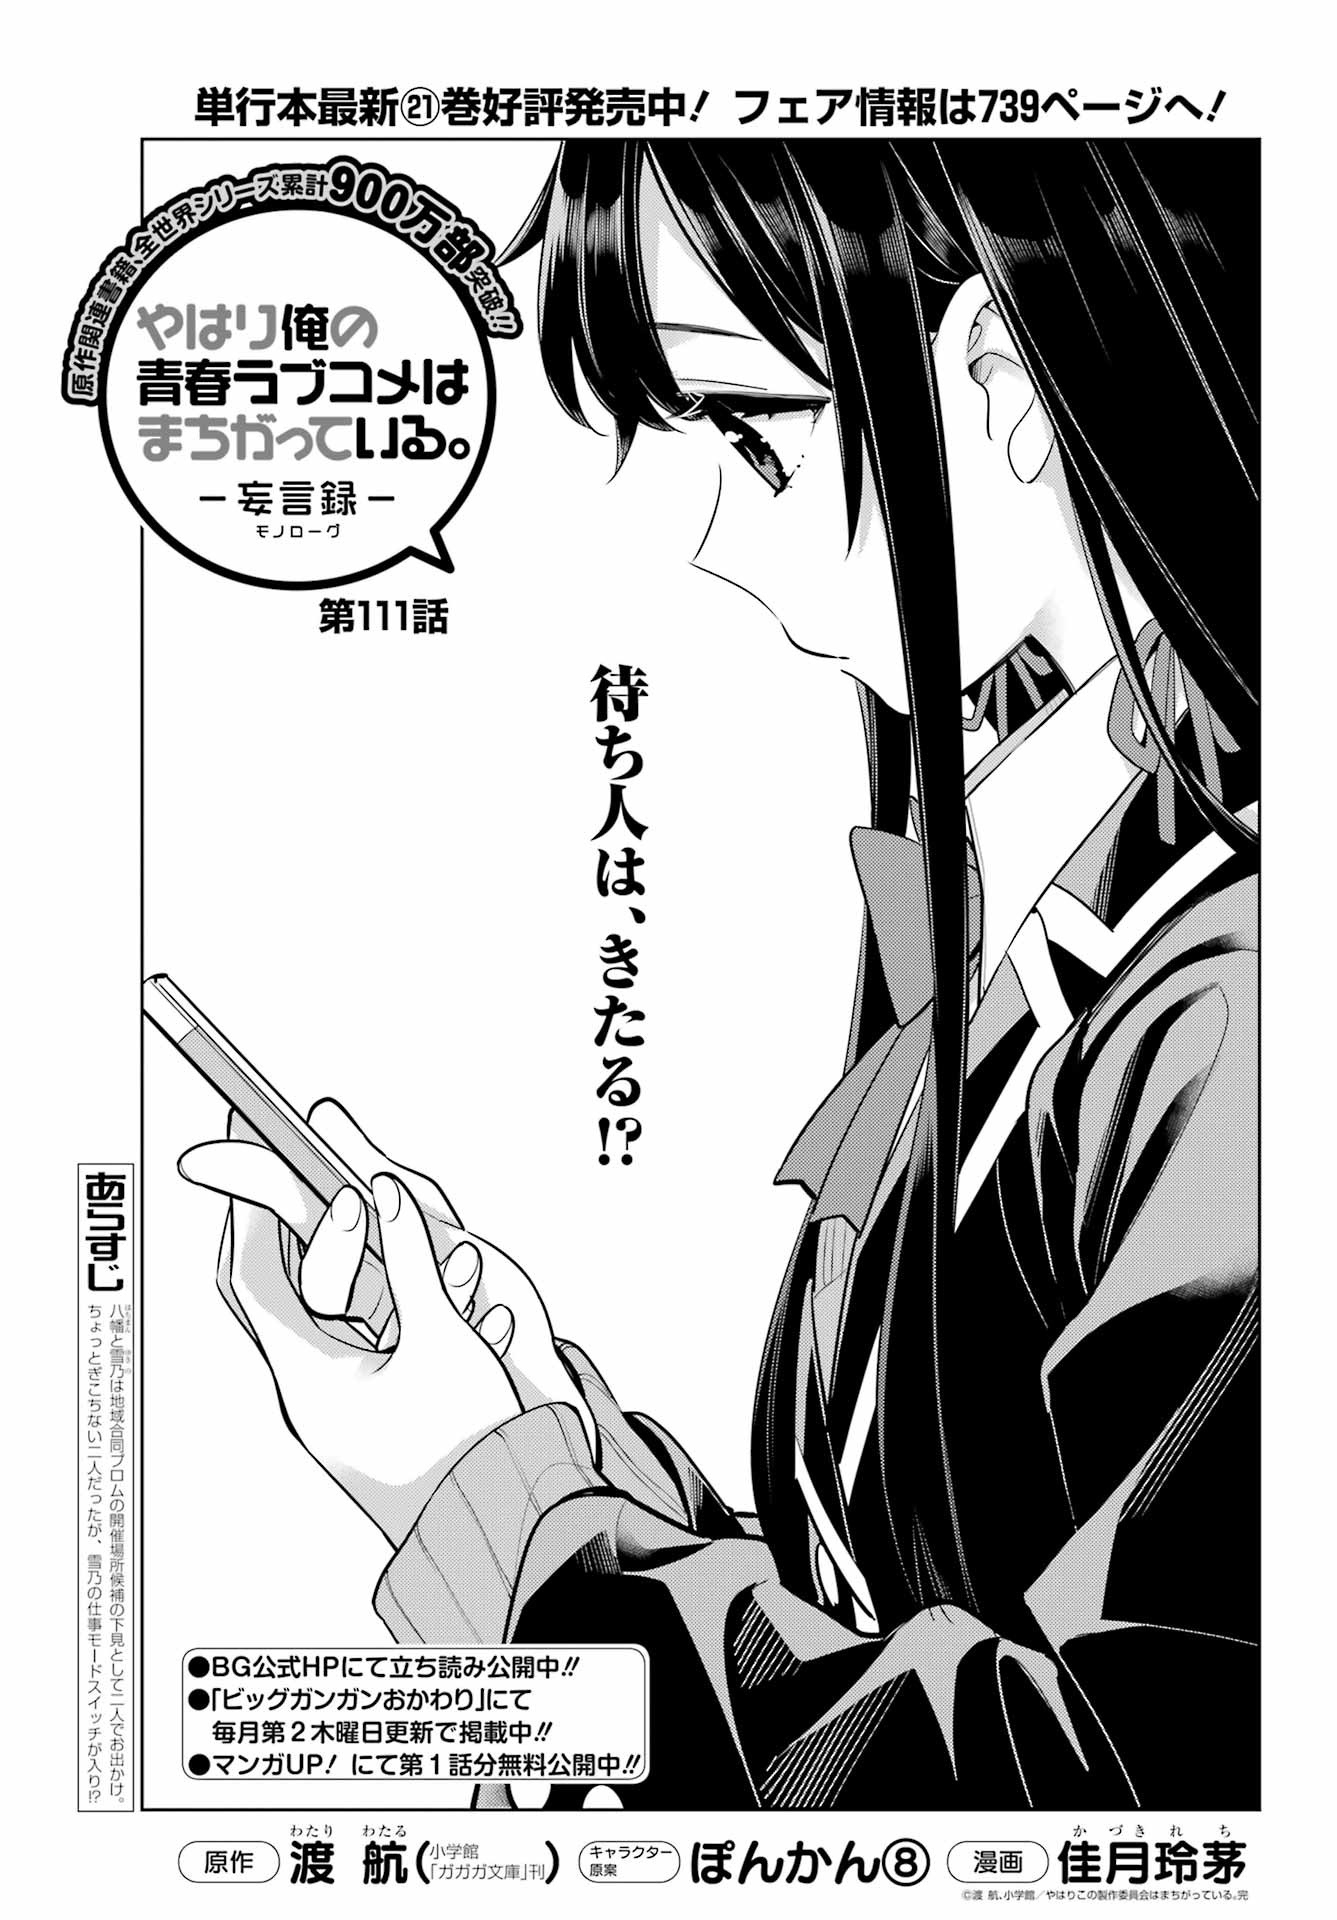 Yahari Ore no Seishun Rabukome wa Machigatte Iru. - Monologue - Chapter 111 - Page 1